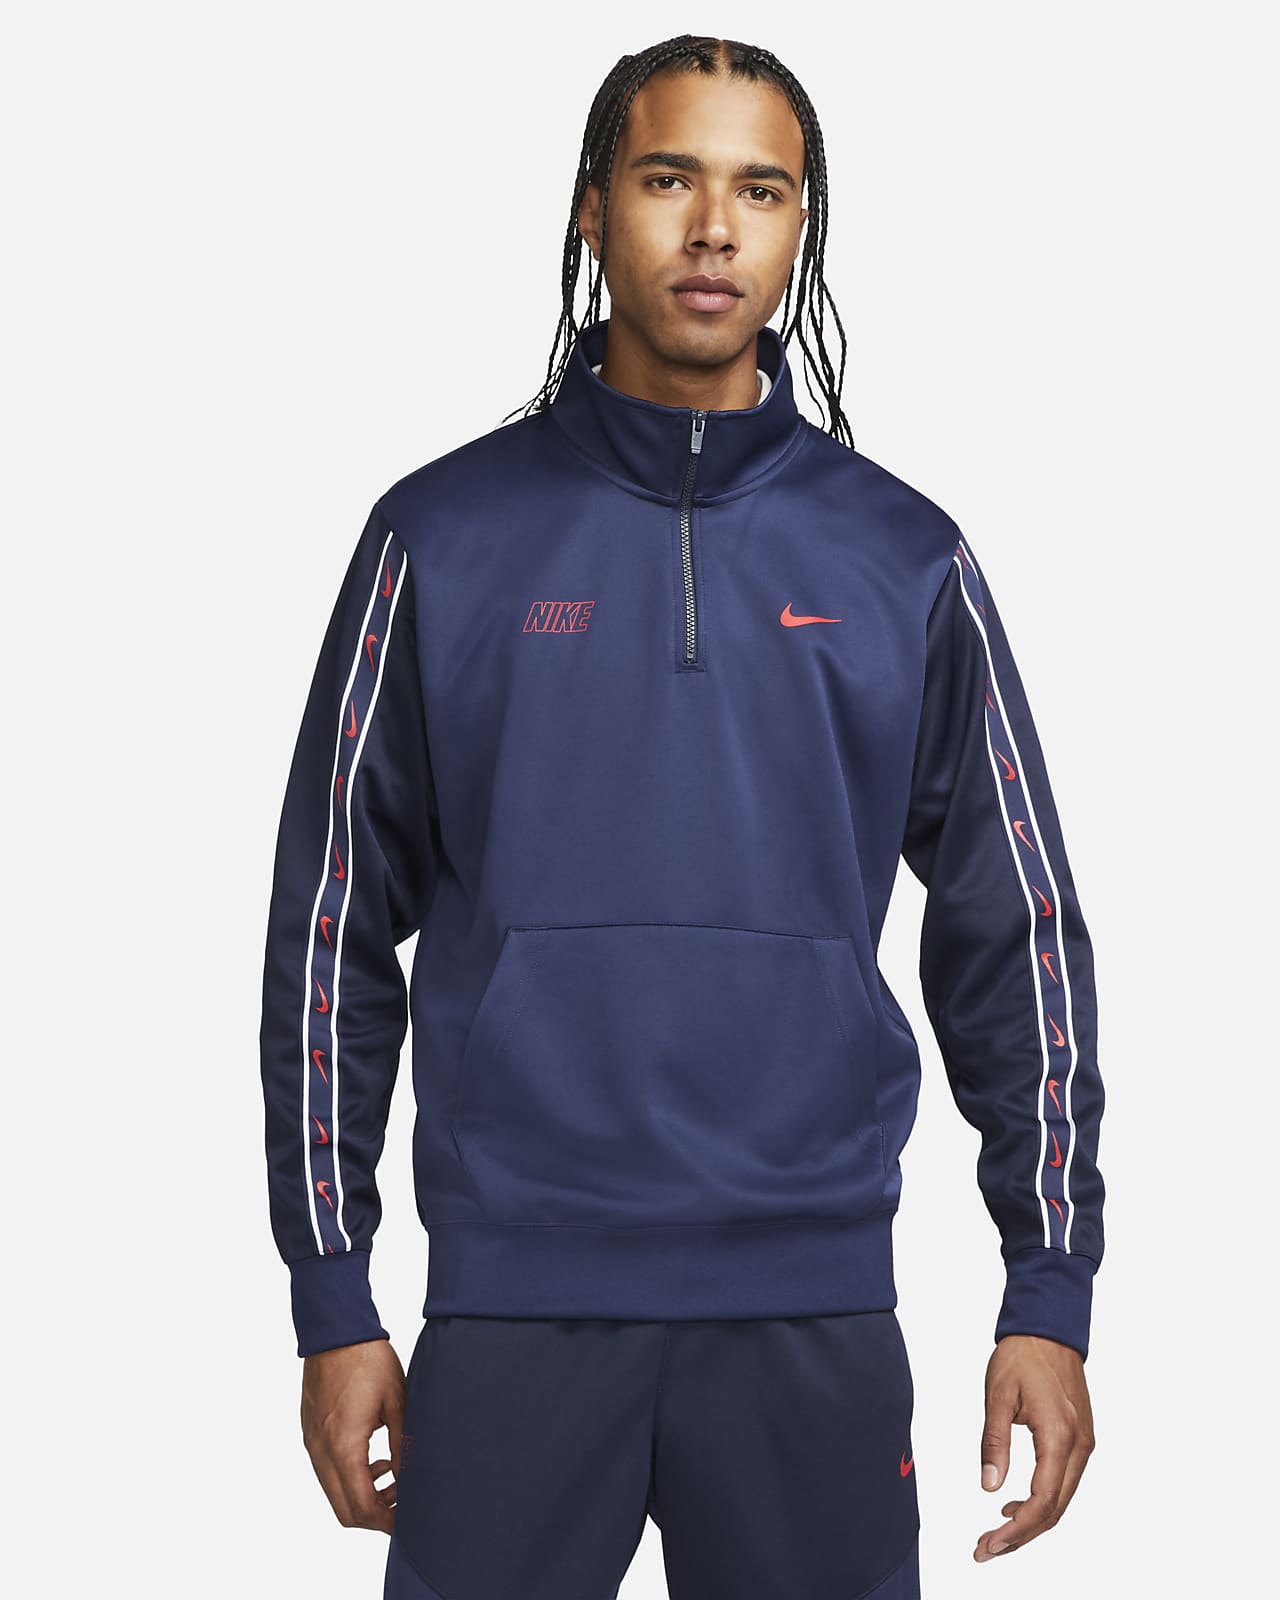 Ανδρική μπλούζα με φερμουάρ στο μισό μήκος Nike Sportswear Repeat